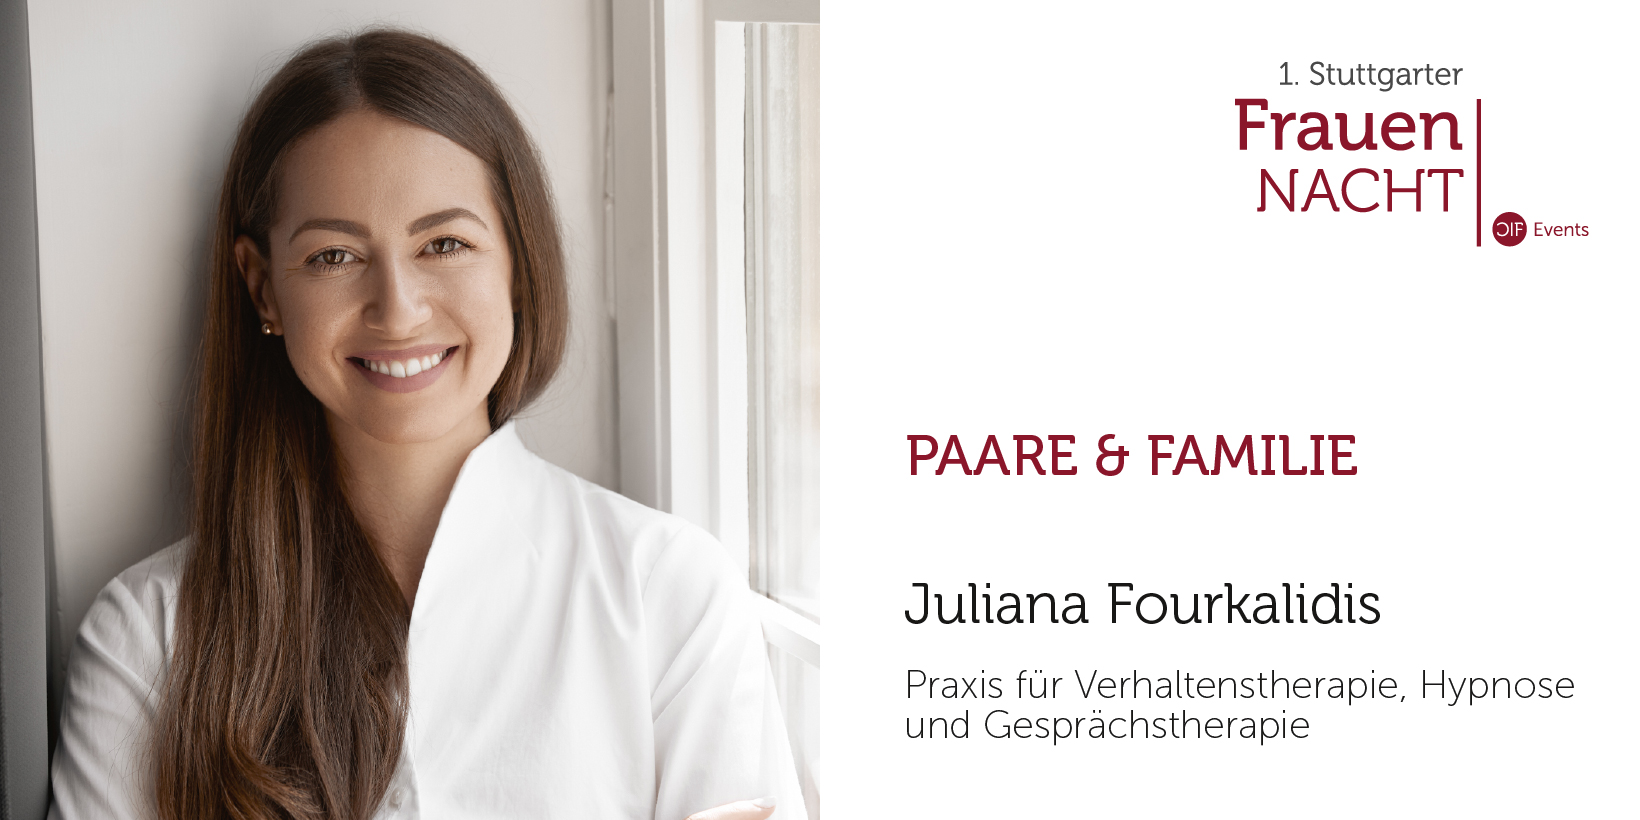 Juliana Fourkalidis 1. Stuttgarter Frauennacht